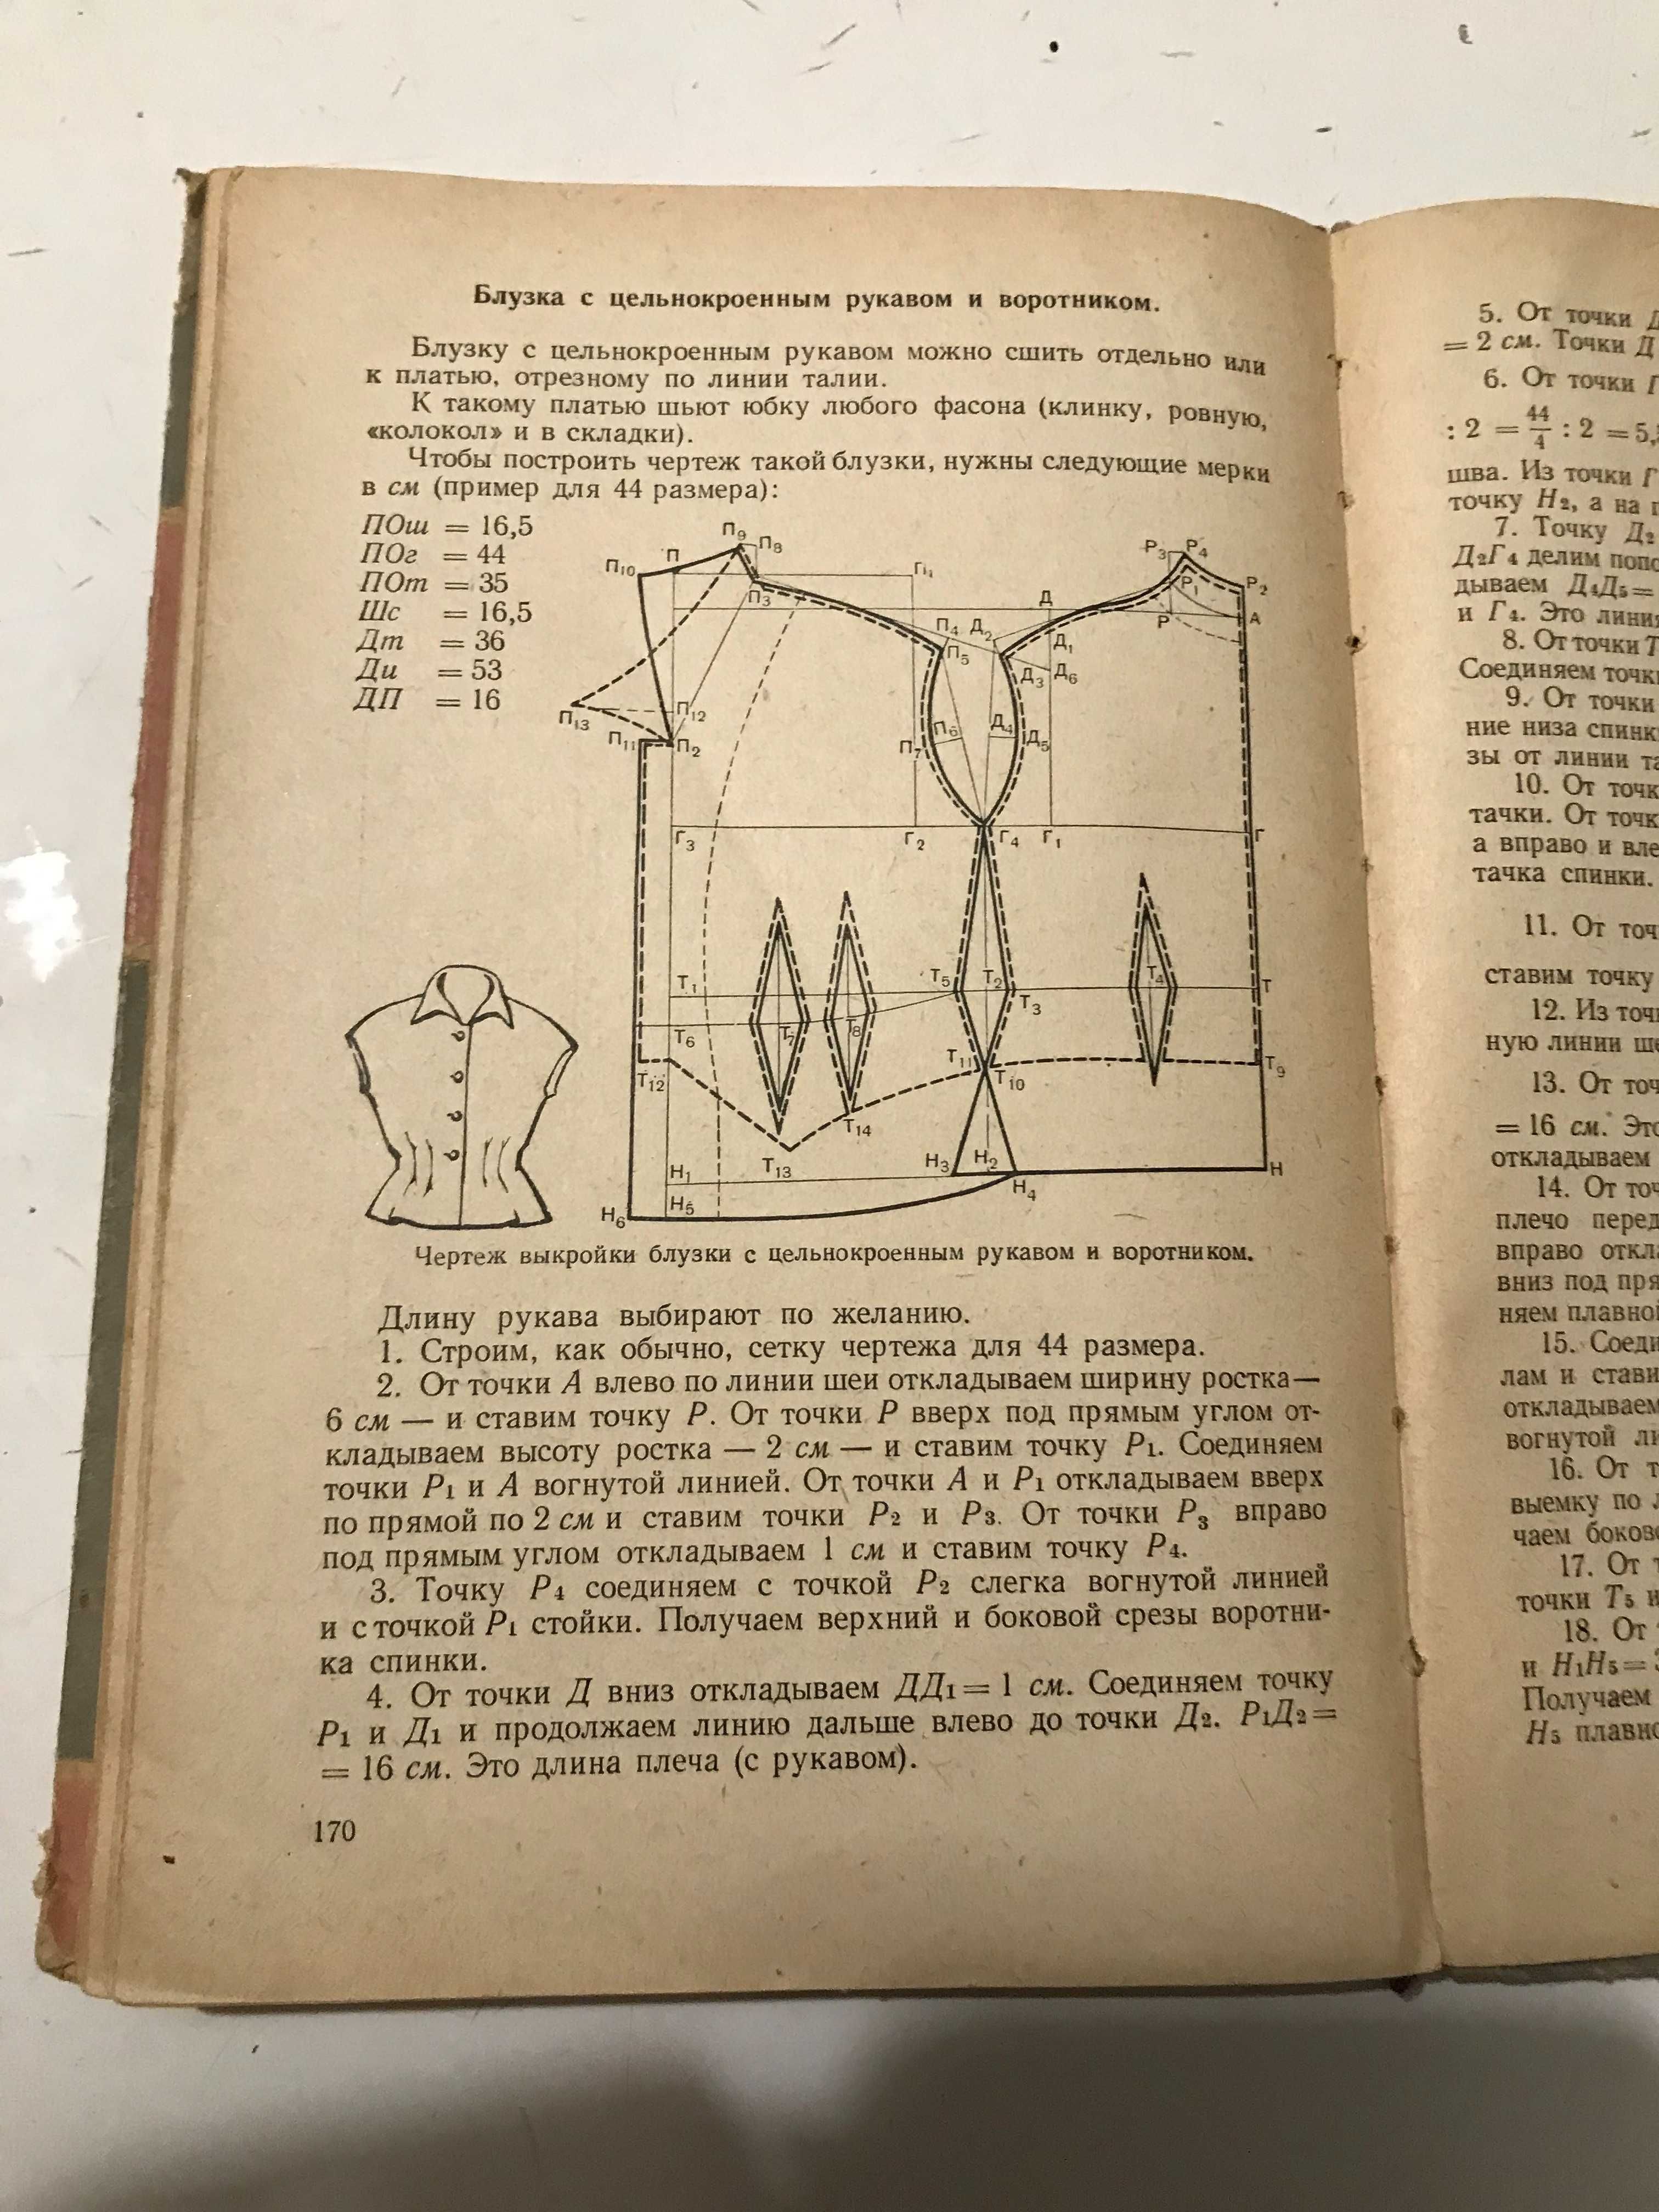 Редкие книги!  учебник  Домоводство 1962 год СССР